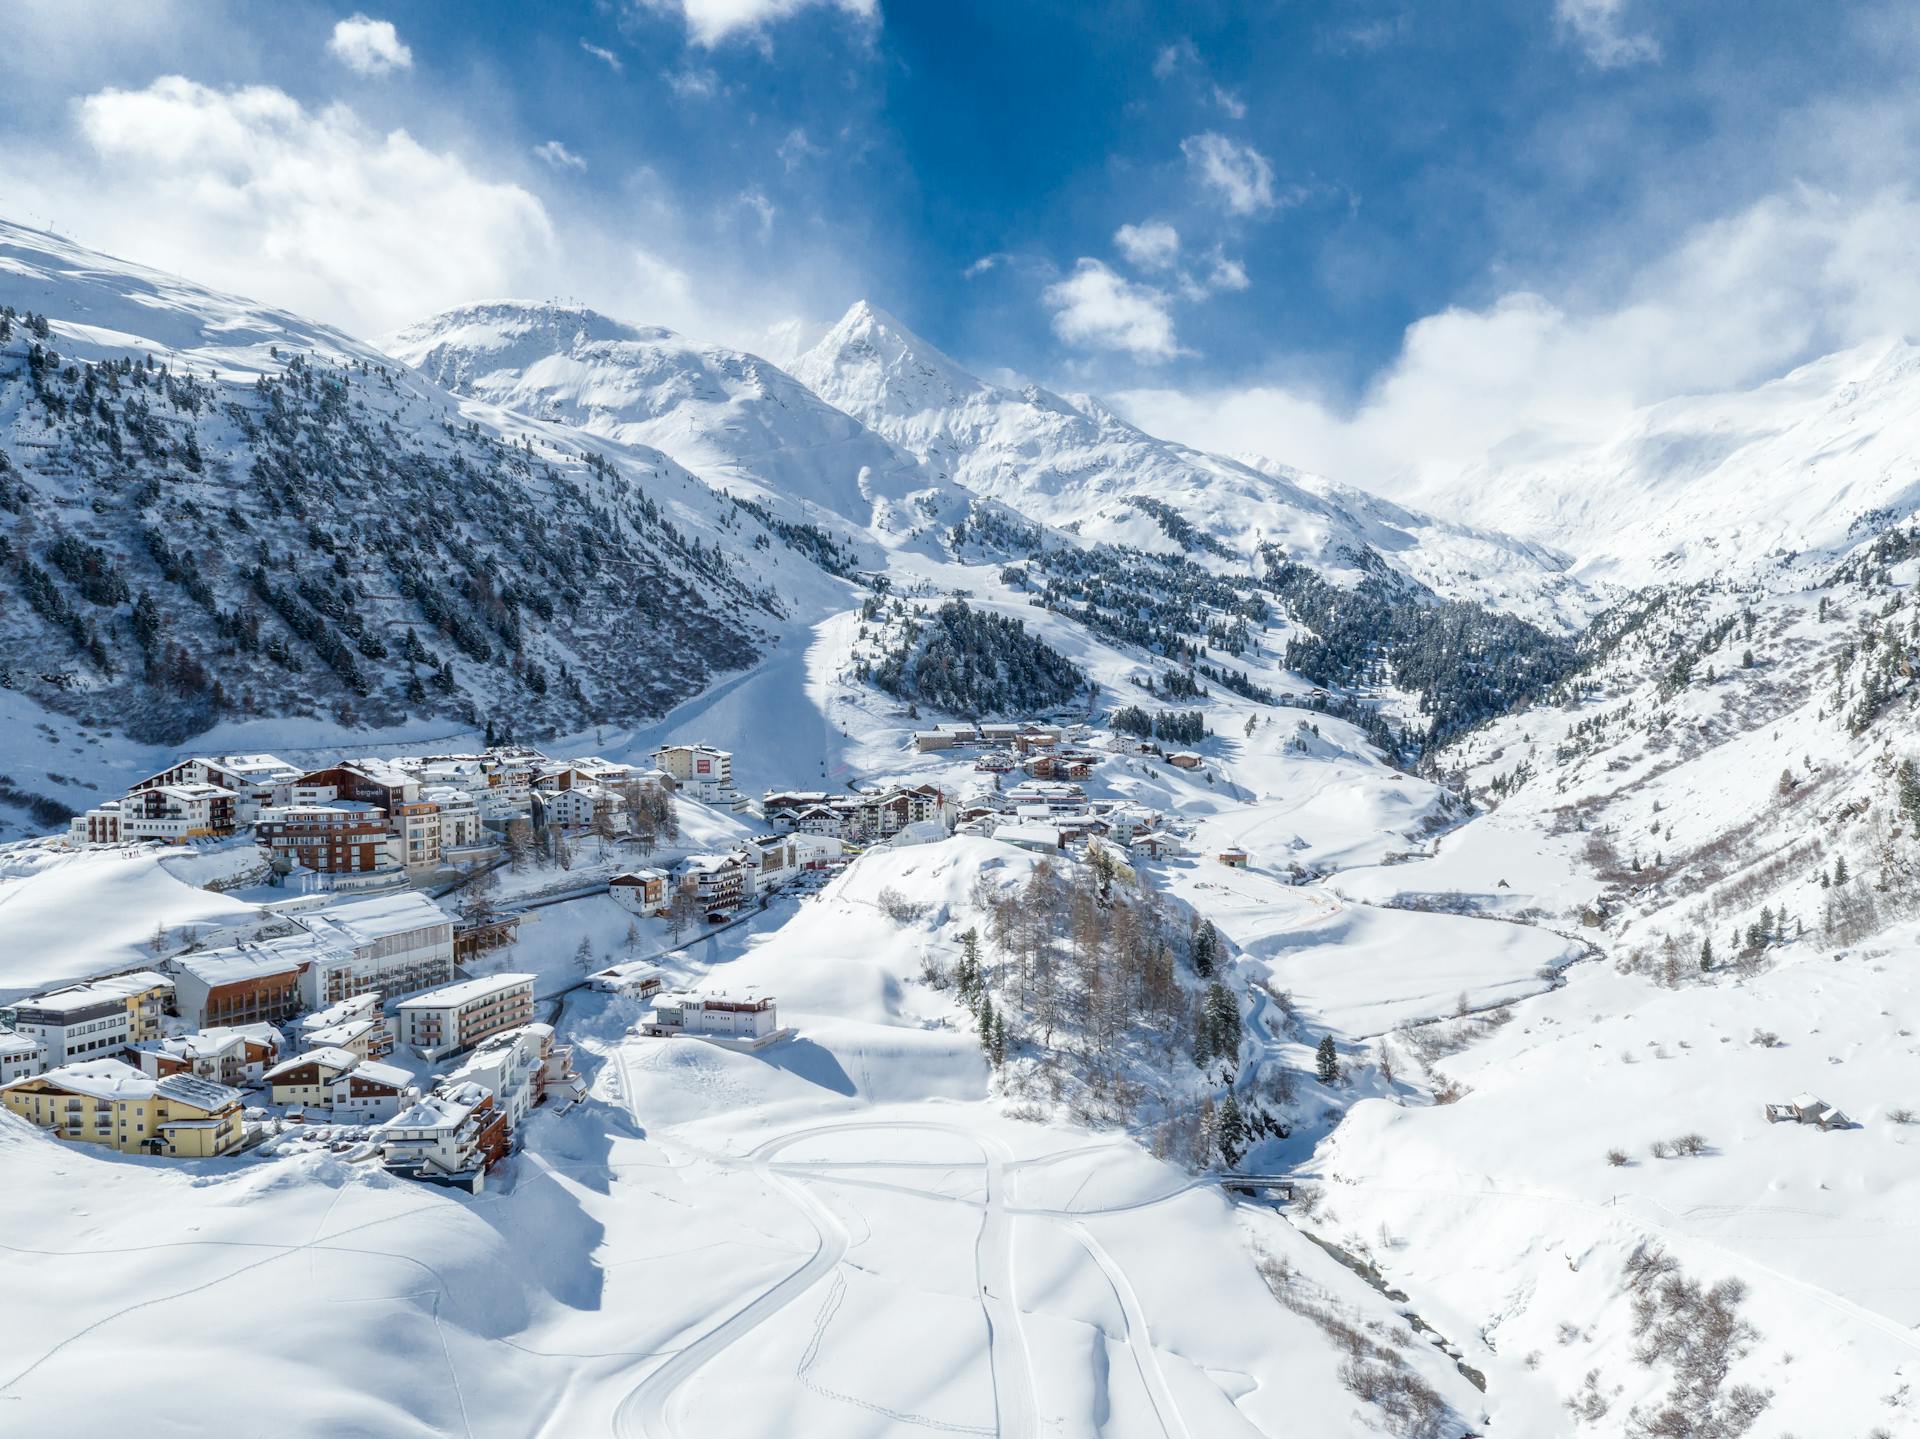 Snowy ski resort or Obergurgl in Austira